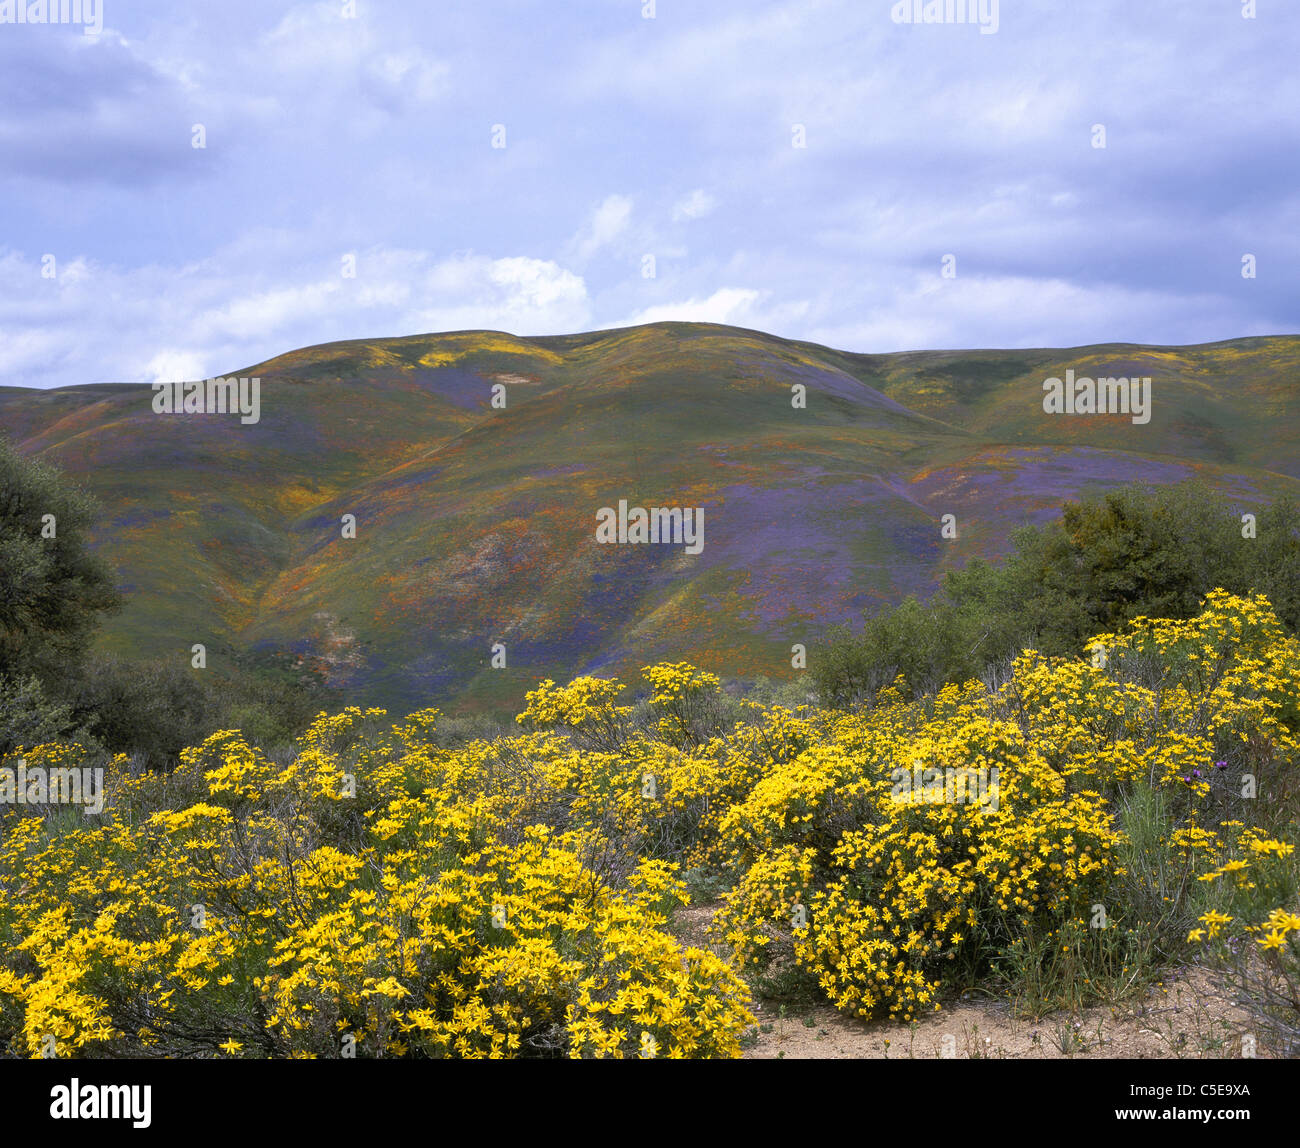 La piena fioritura nella primavera del 2003 è stata un anno eccellente per questo spettacolo di fiori selvatici. Gorman, Los Angeles County, California, USA. Foto Stock